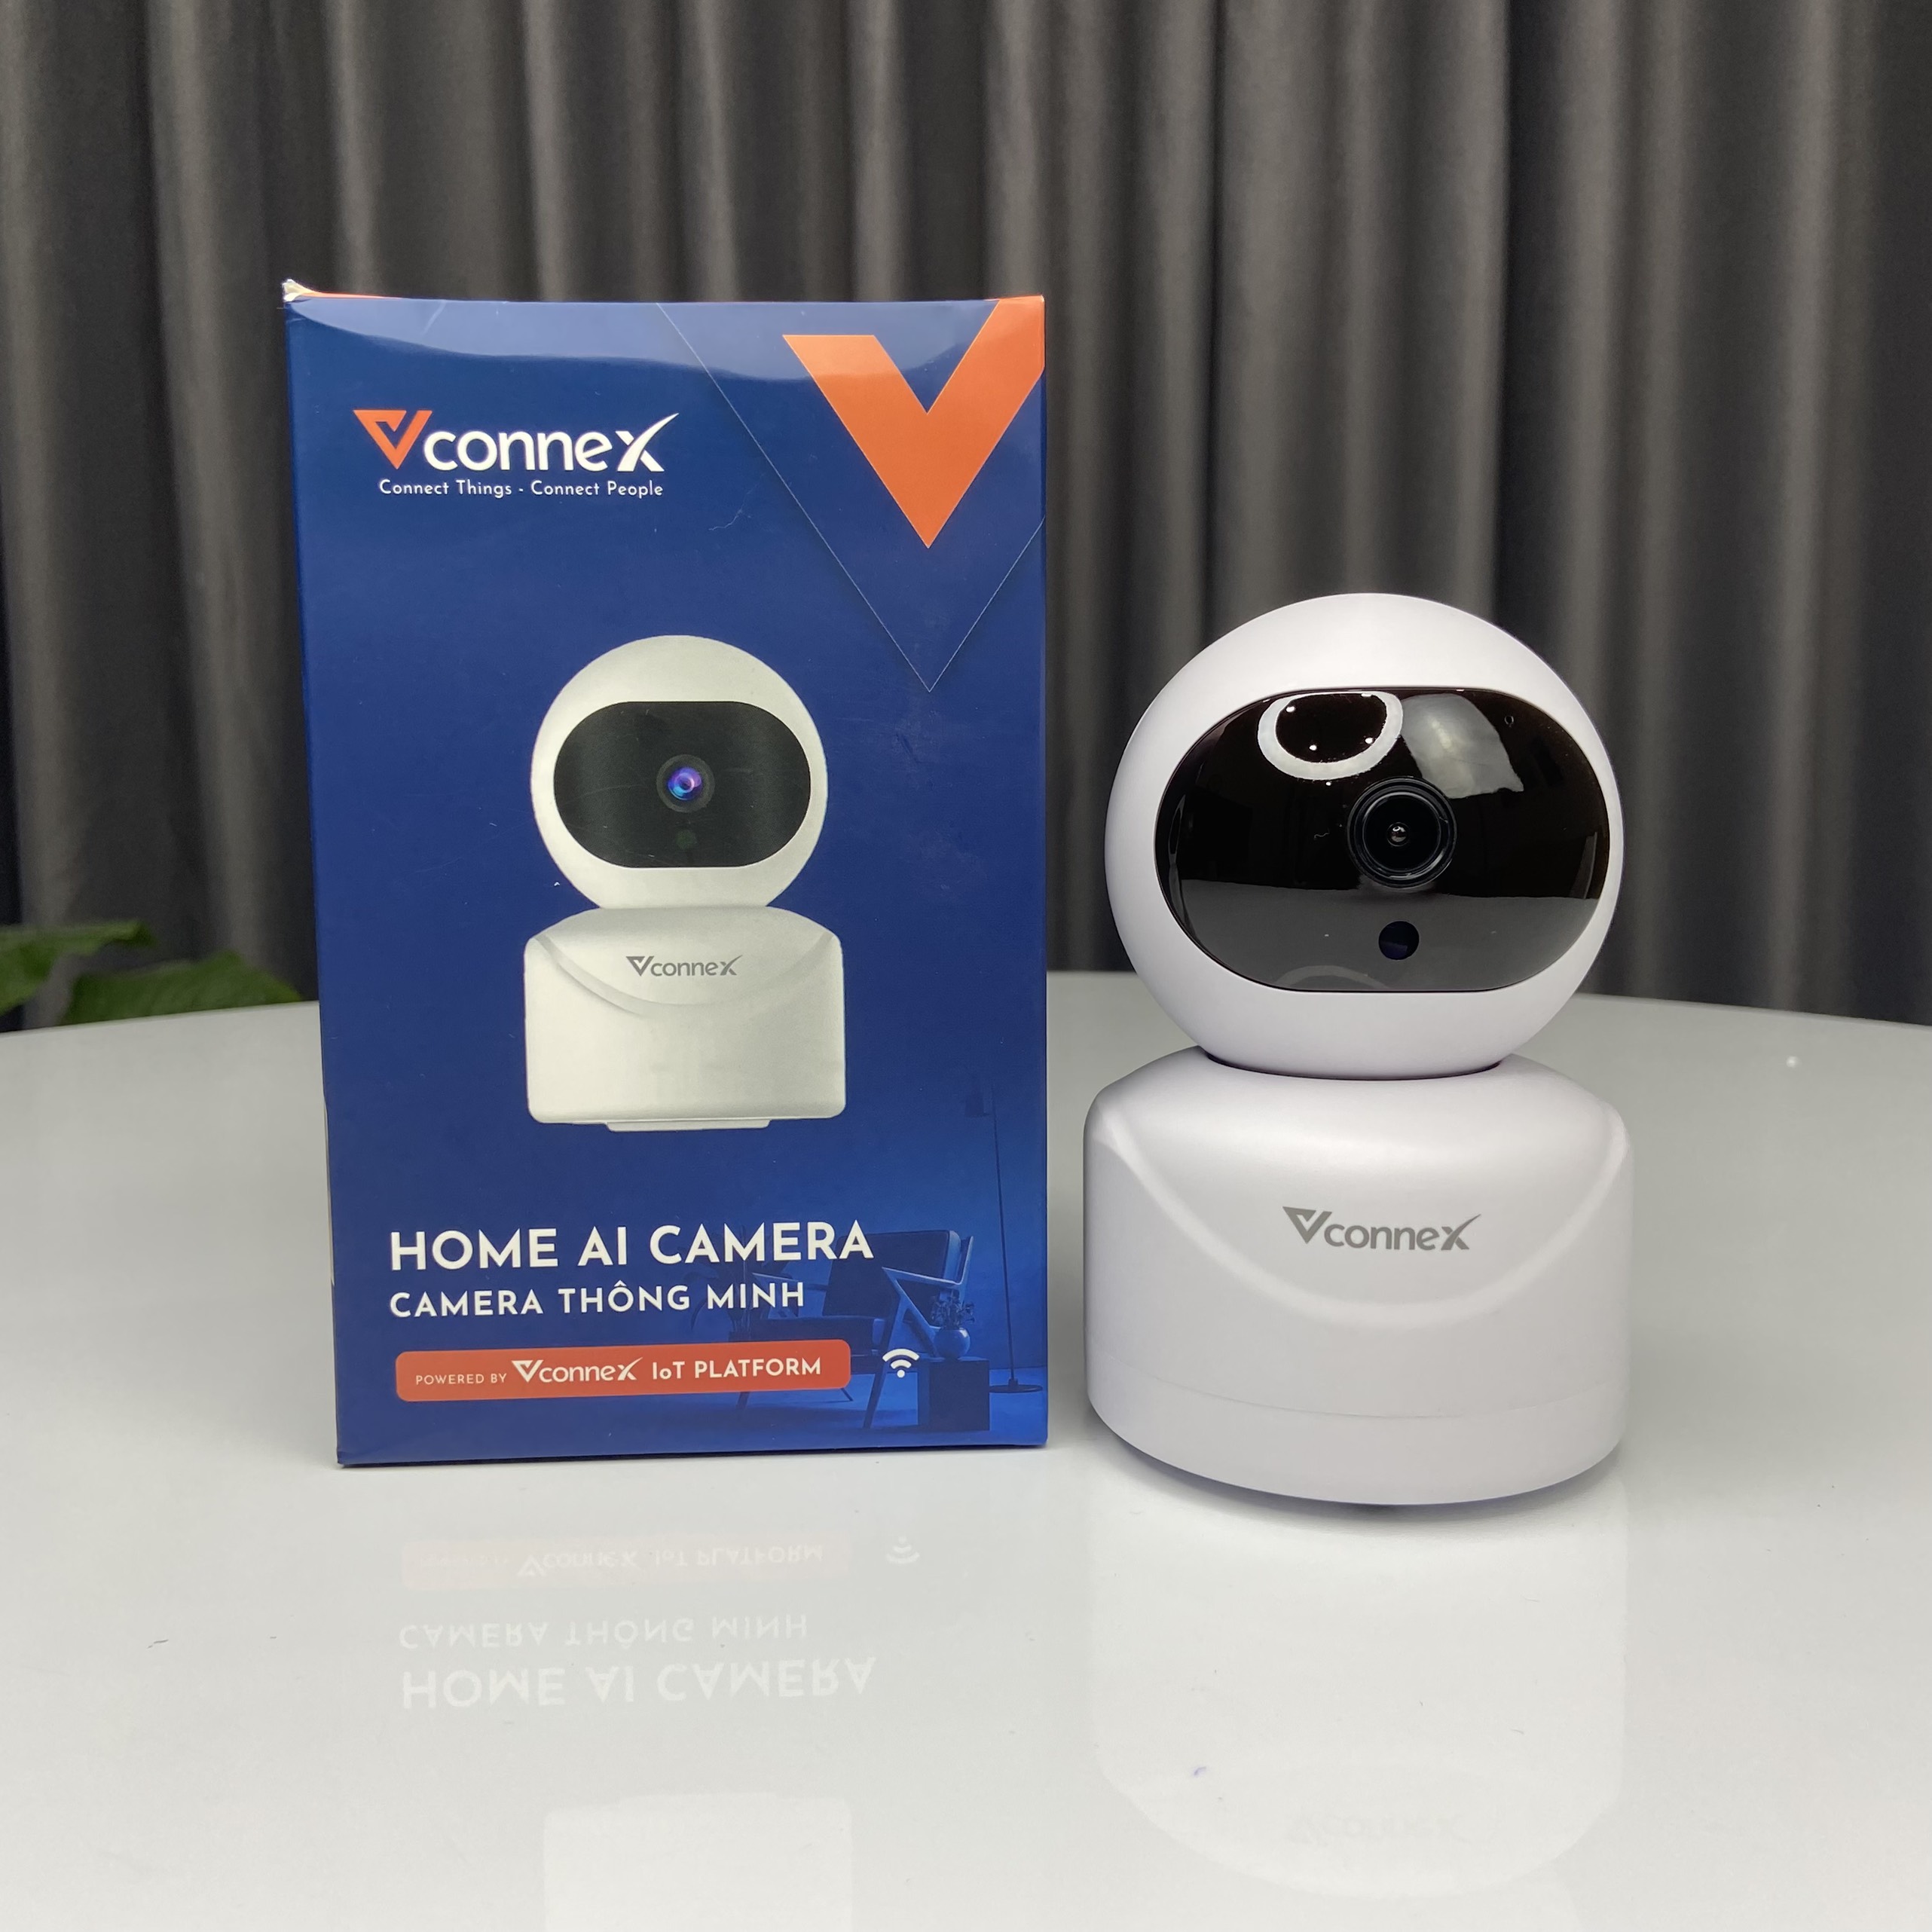 Camera trong nhà Vconnex - Camera wifi giám sát AI, độ phân giải Ultra HD 4K 3MP, đàm thoại 2 chiều, xoay 360 độ, 6 đèn hồng ngoại - Hàng chính hãng